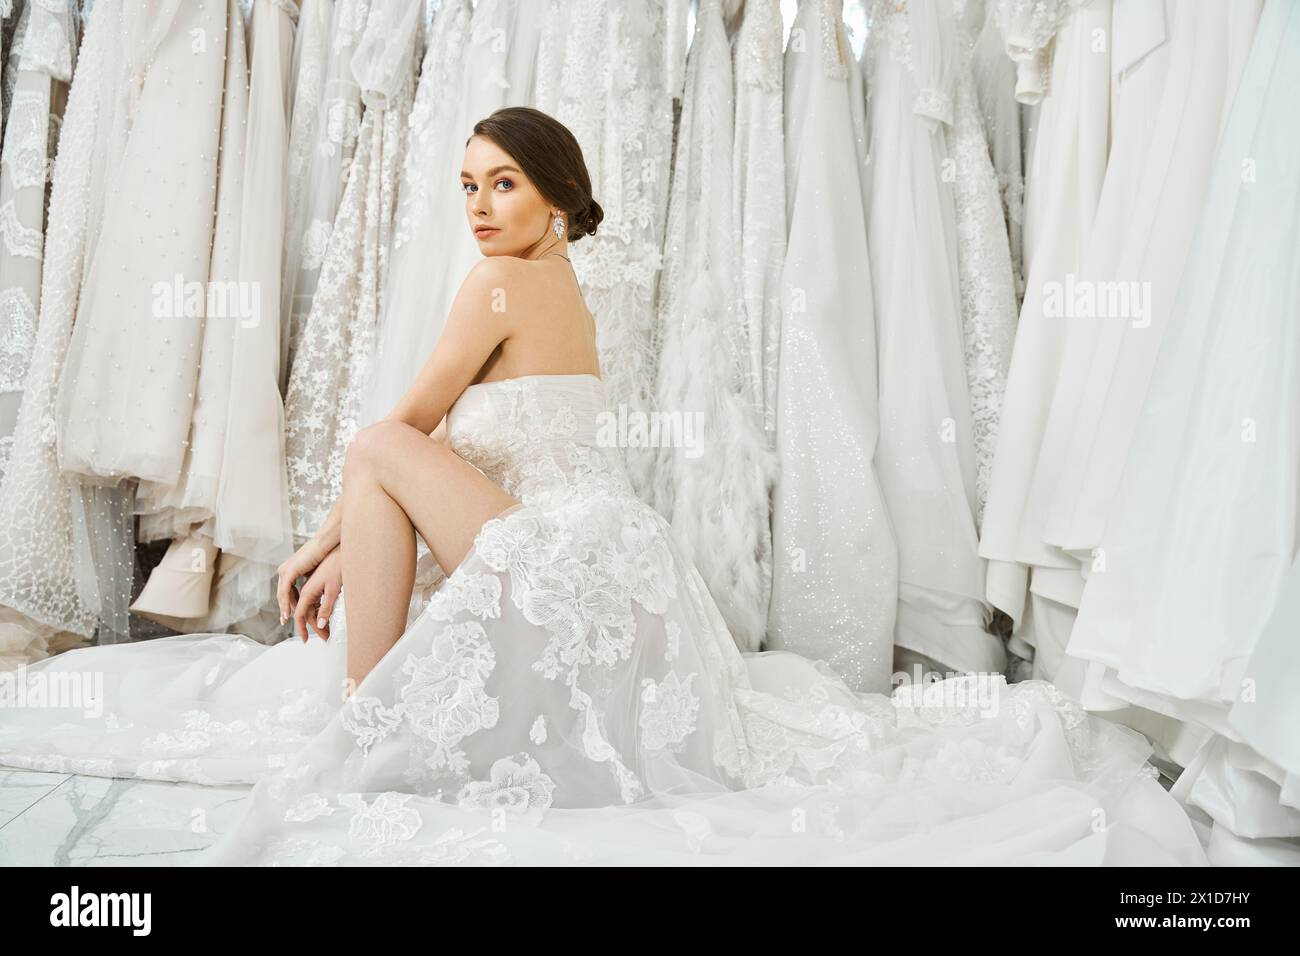 Eine junge brünette Braut sitzt vor einem Kleiderständer und wählt sorgfältig das perfekte Kleid für ihren Hochzeitstag aus. Stockfoto